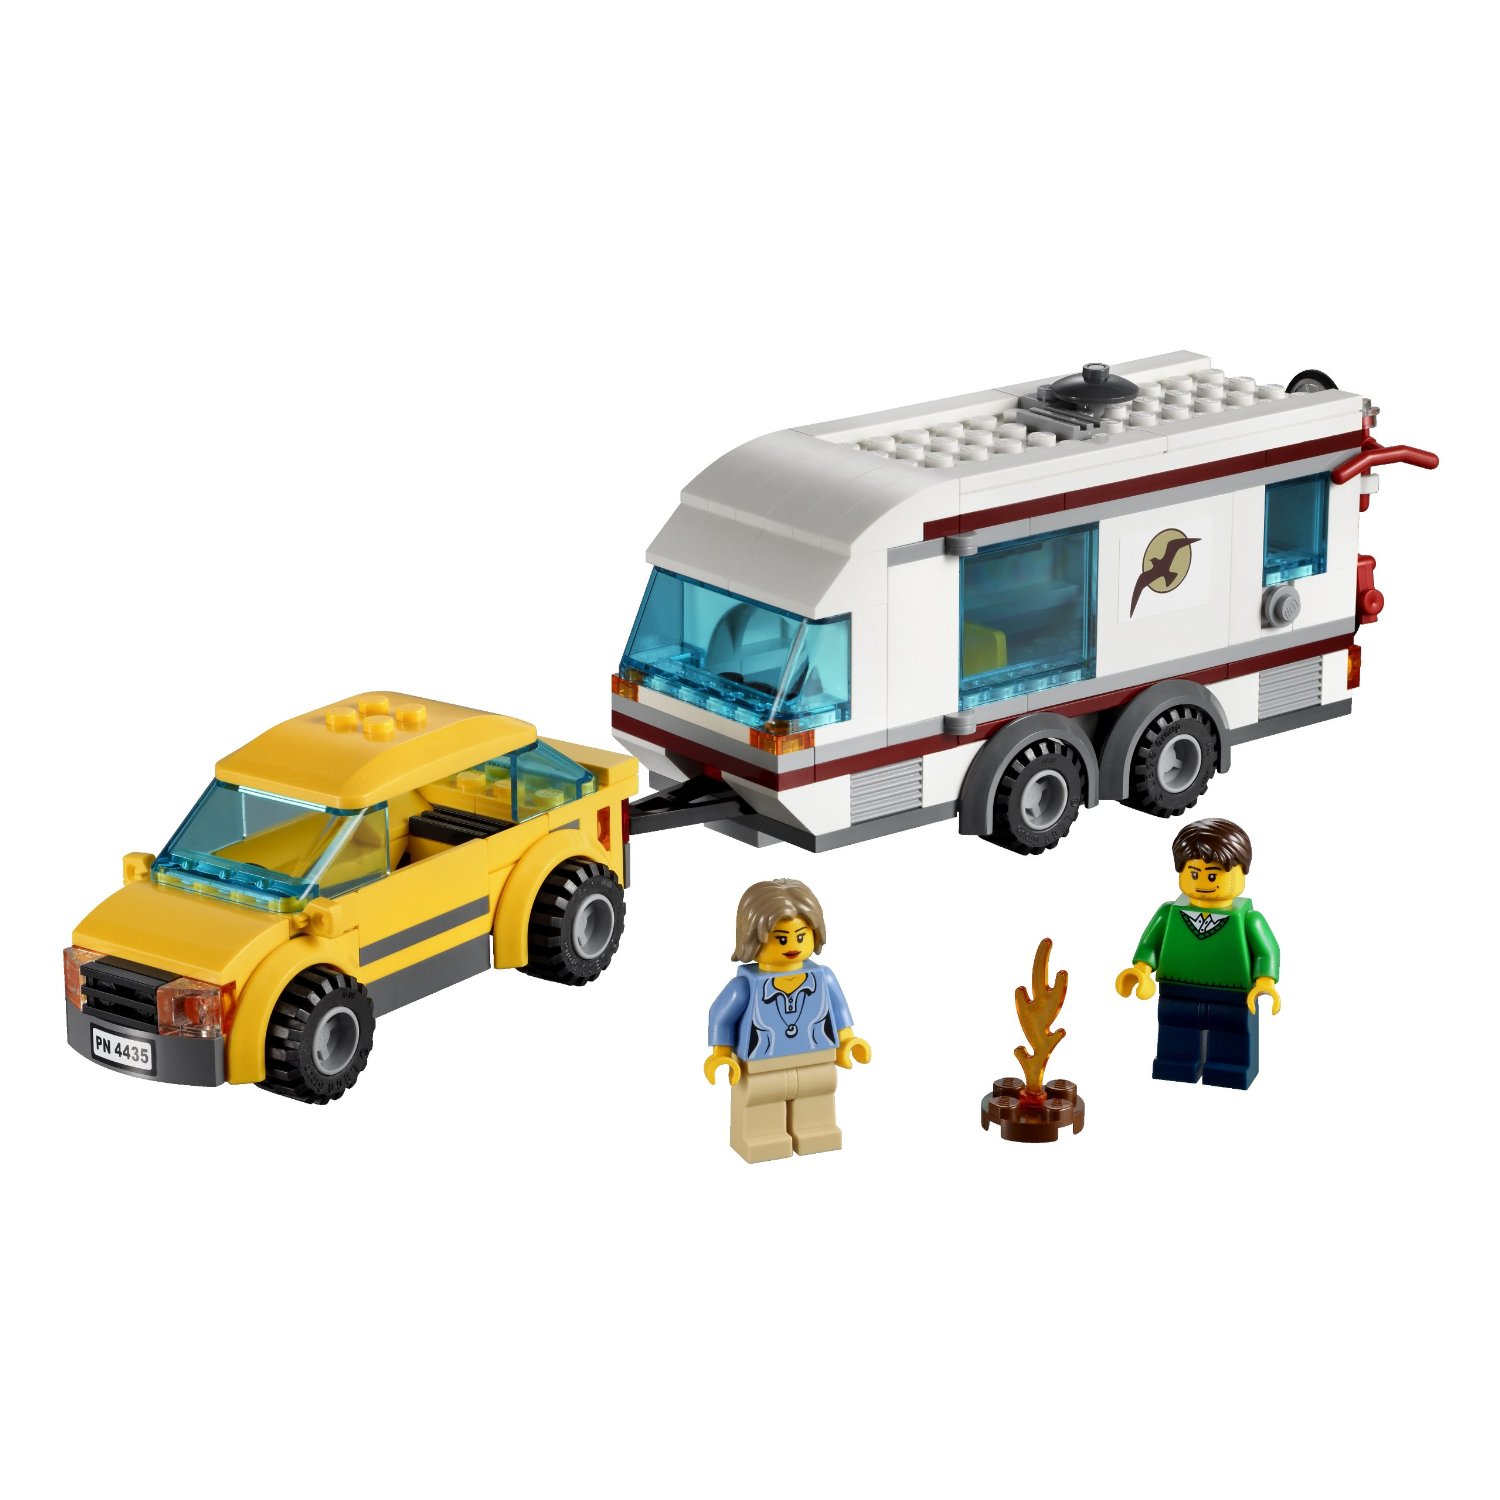 Lego city 60285 la voiture de sport avec toit amovible et